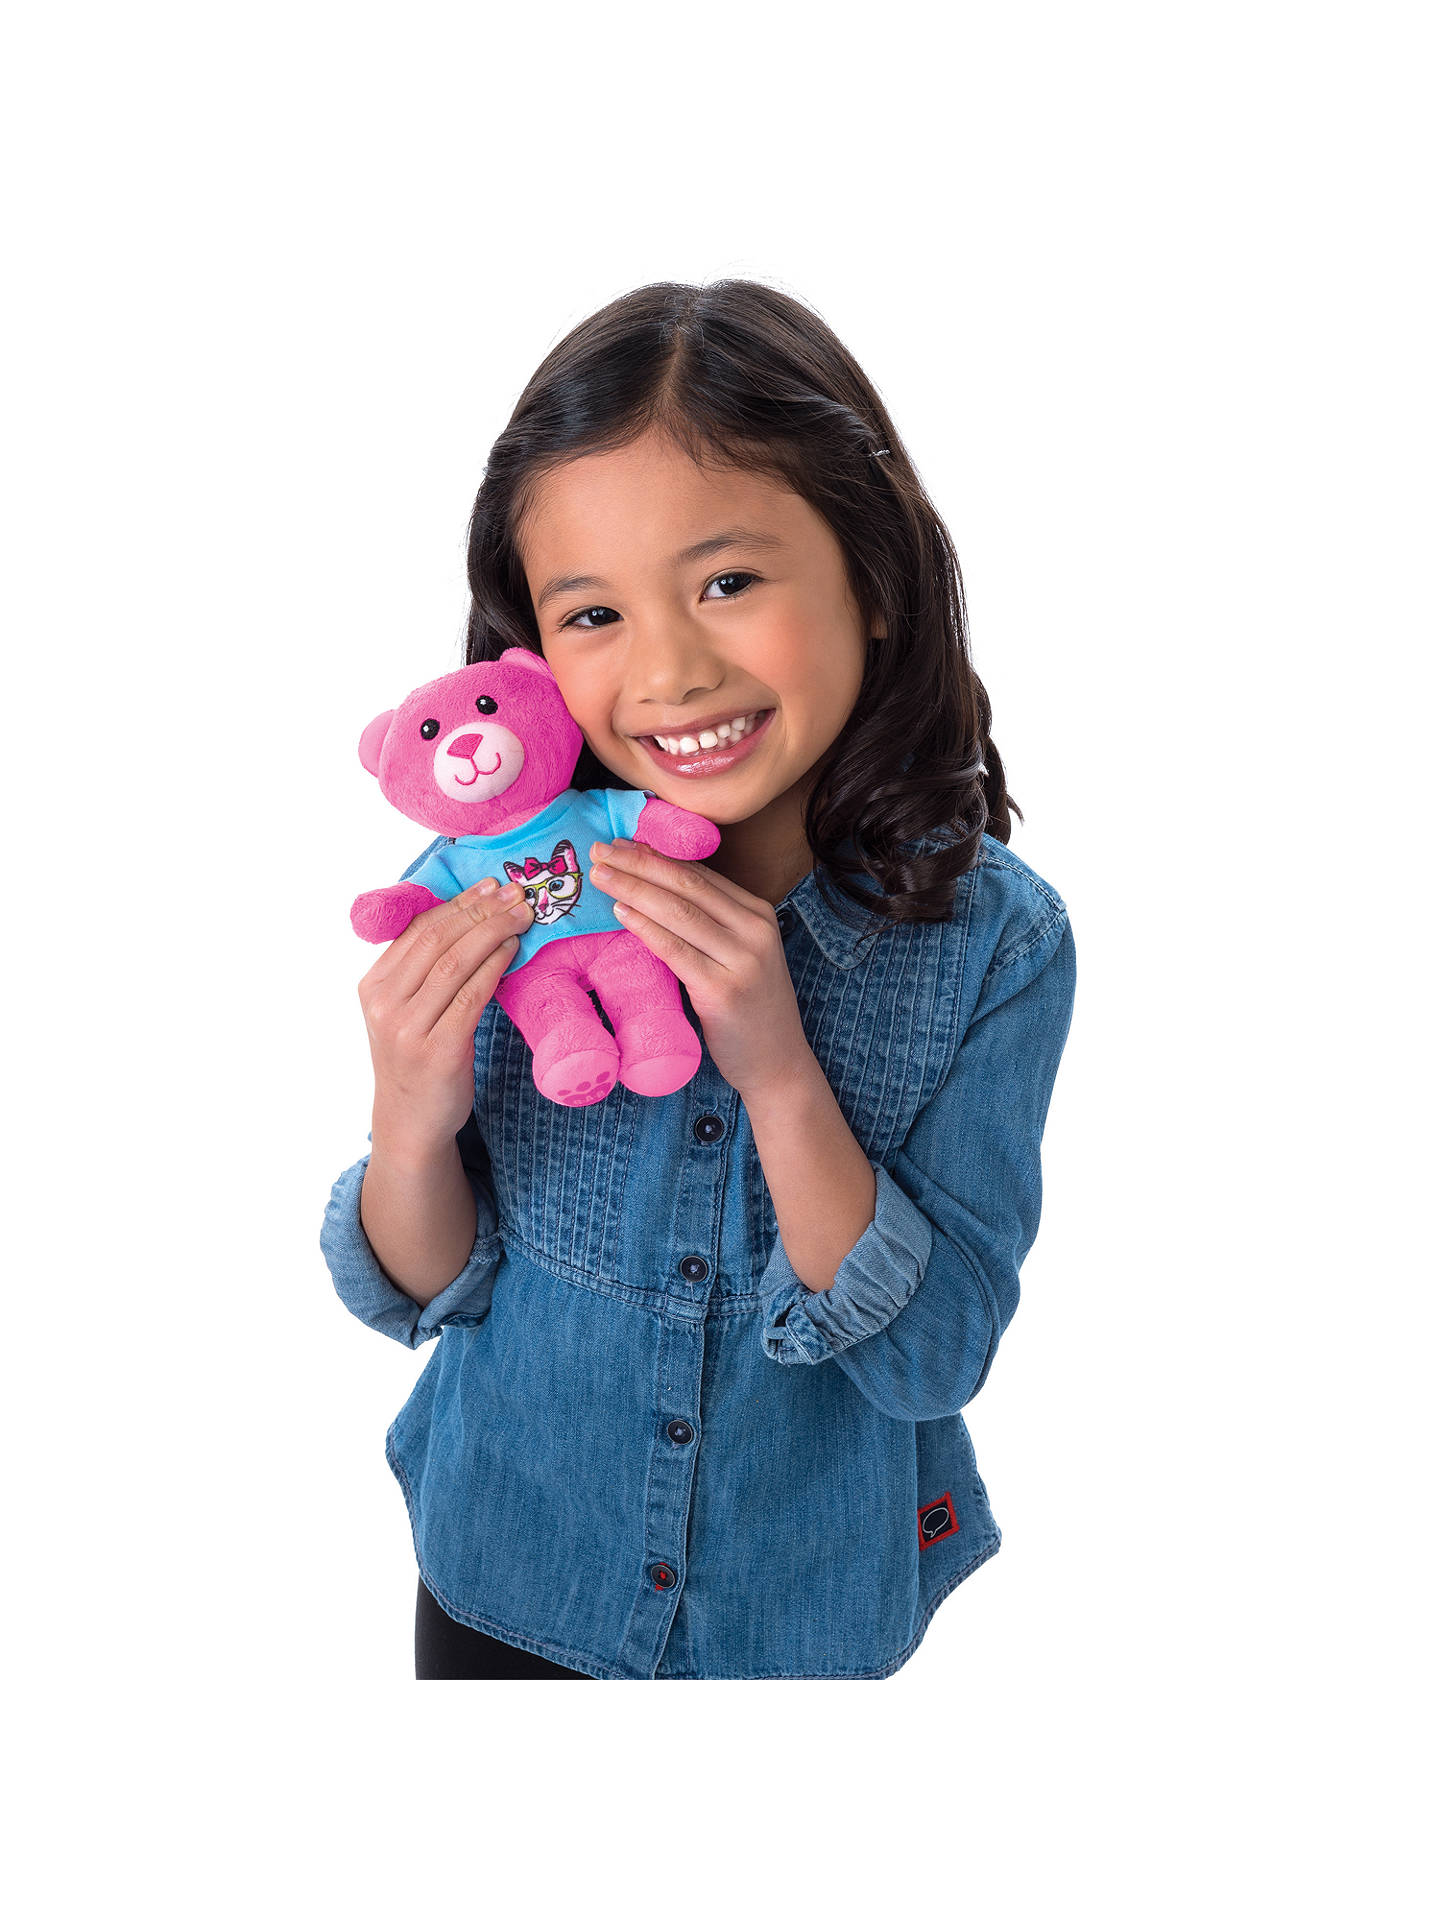 Игрушка 8 9 лет. Build-a-Bear студия мягкой игрушки. Популярные игрушки для детей. Игрушки для девочек 6 лет. Самые популярные игрушки для девочек.